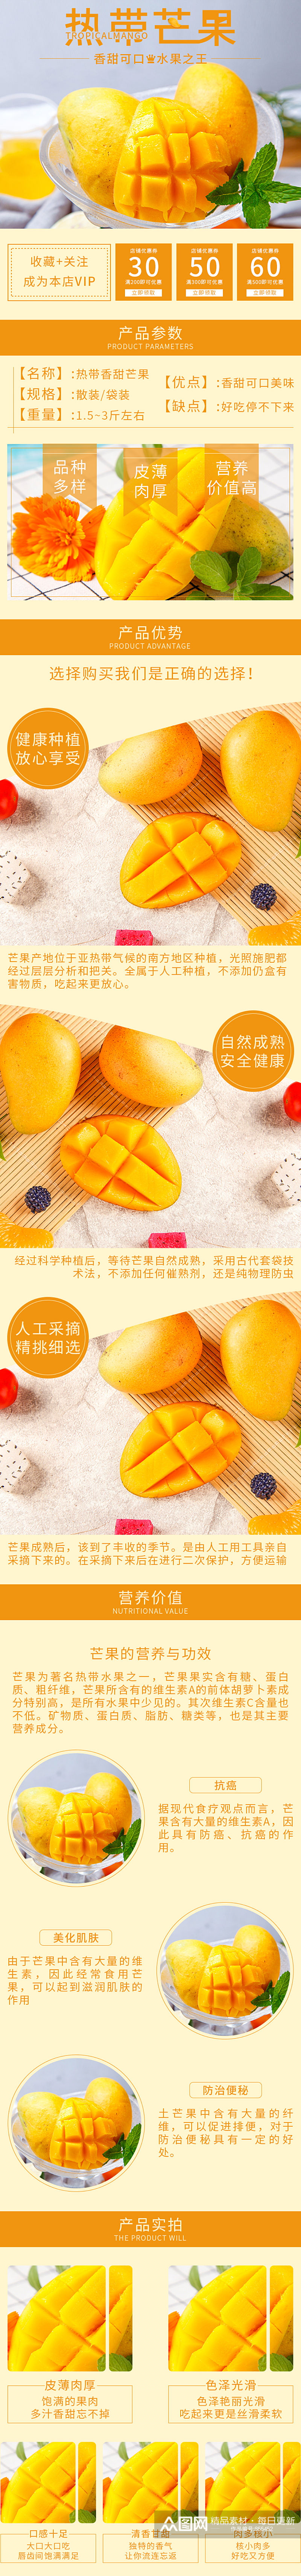 热带水果之芒果详情页素材